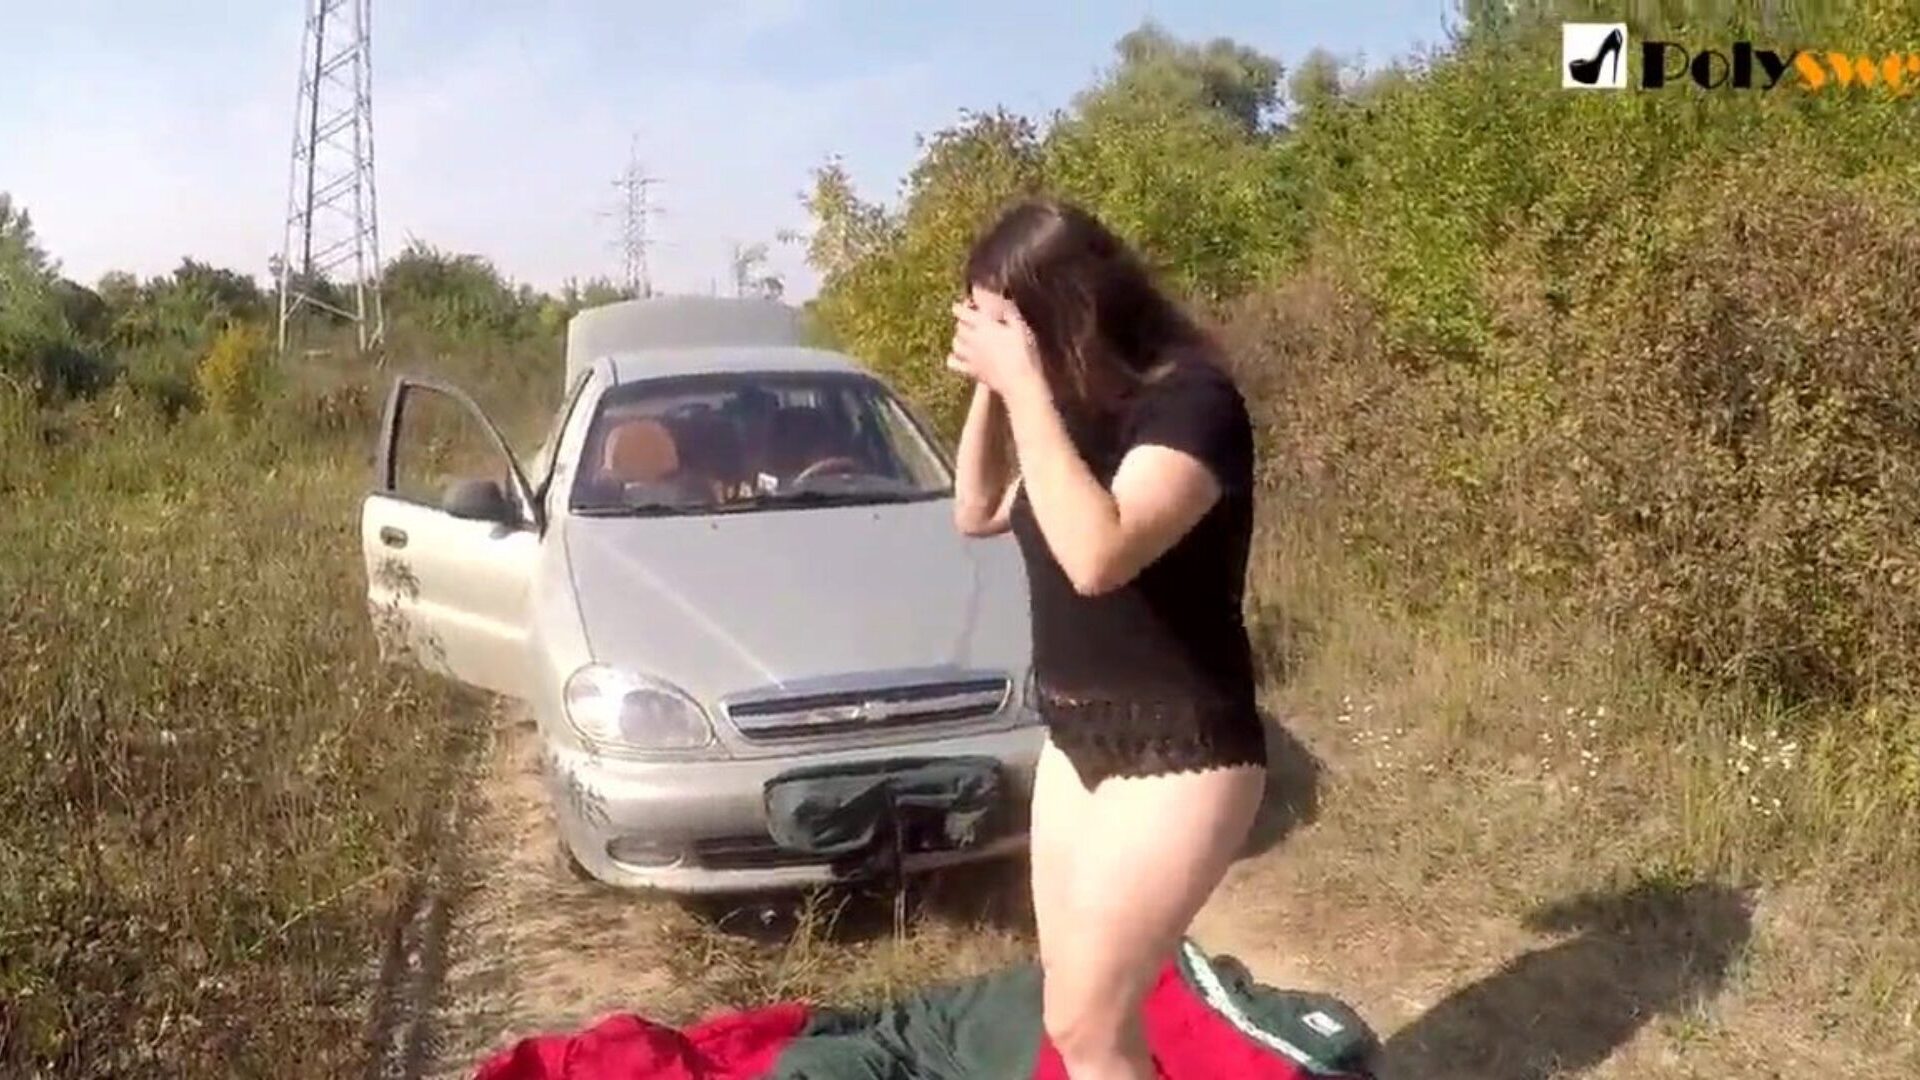 δημόσιος αυνανισμός κορίτσι με πιάστηκε από ένα αυτοκίνητο στην αρχή του βίντεο)